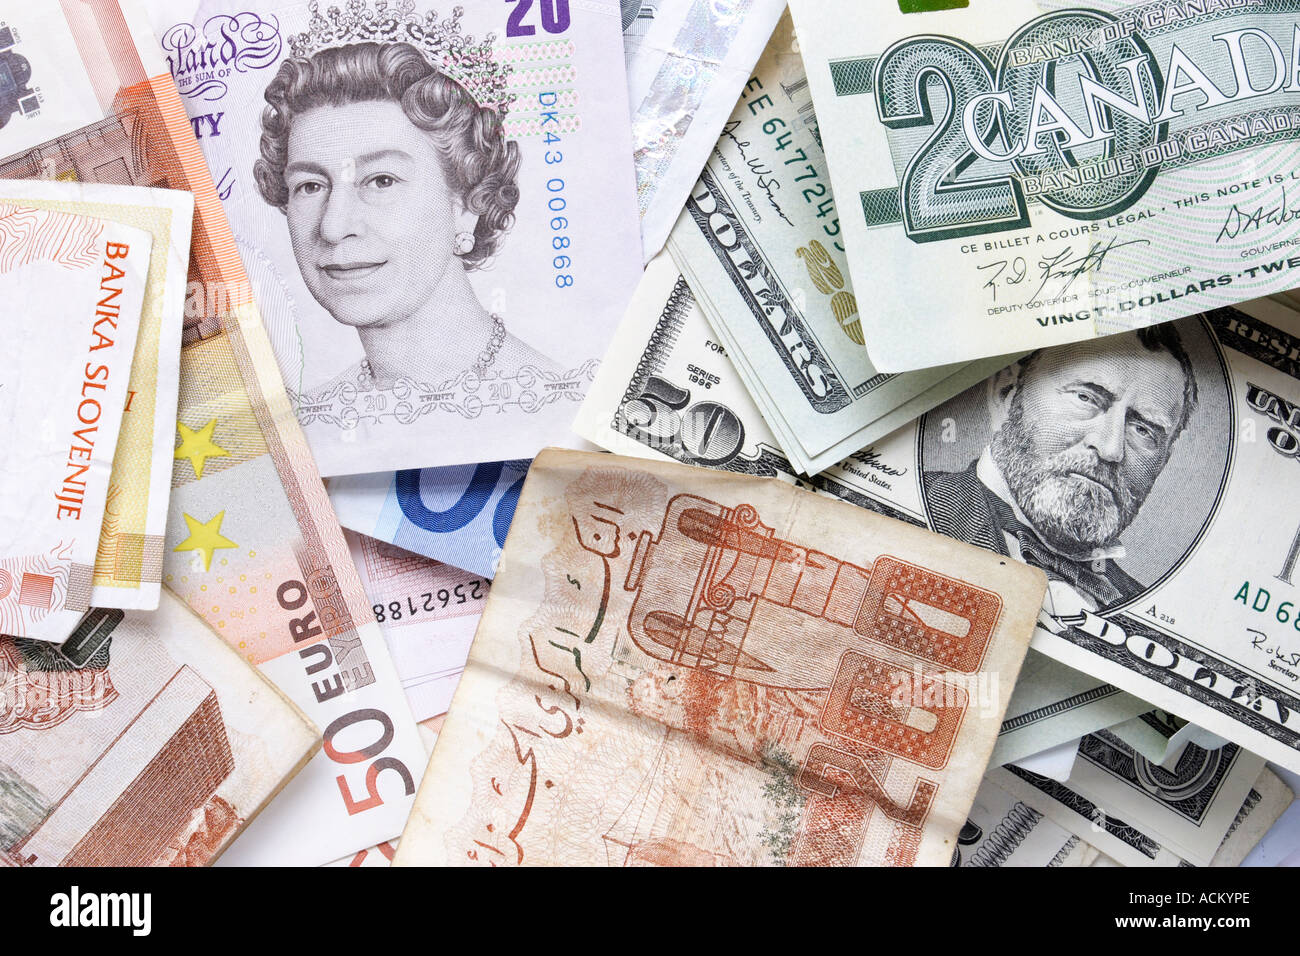 Montage de l'argent de papier de diverses monnaies dont British Pounds US dollars Canadian dollars euro et dollar libérien Banque D'Images